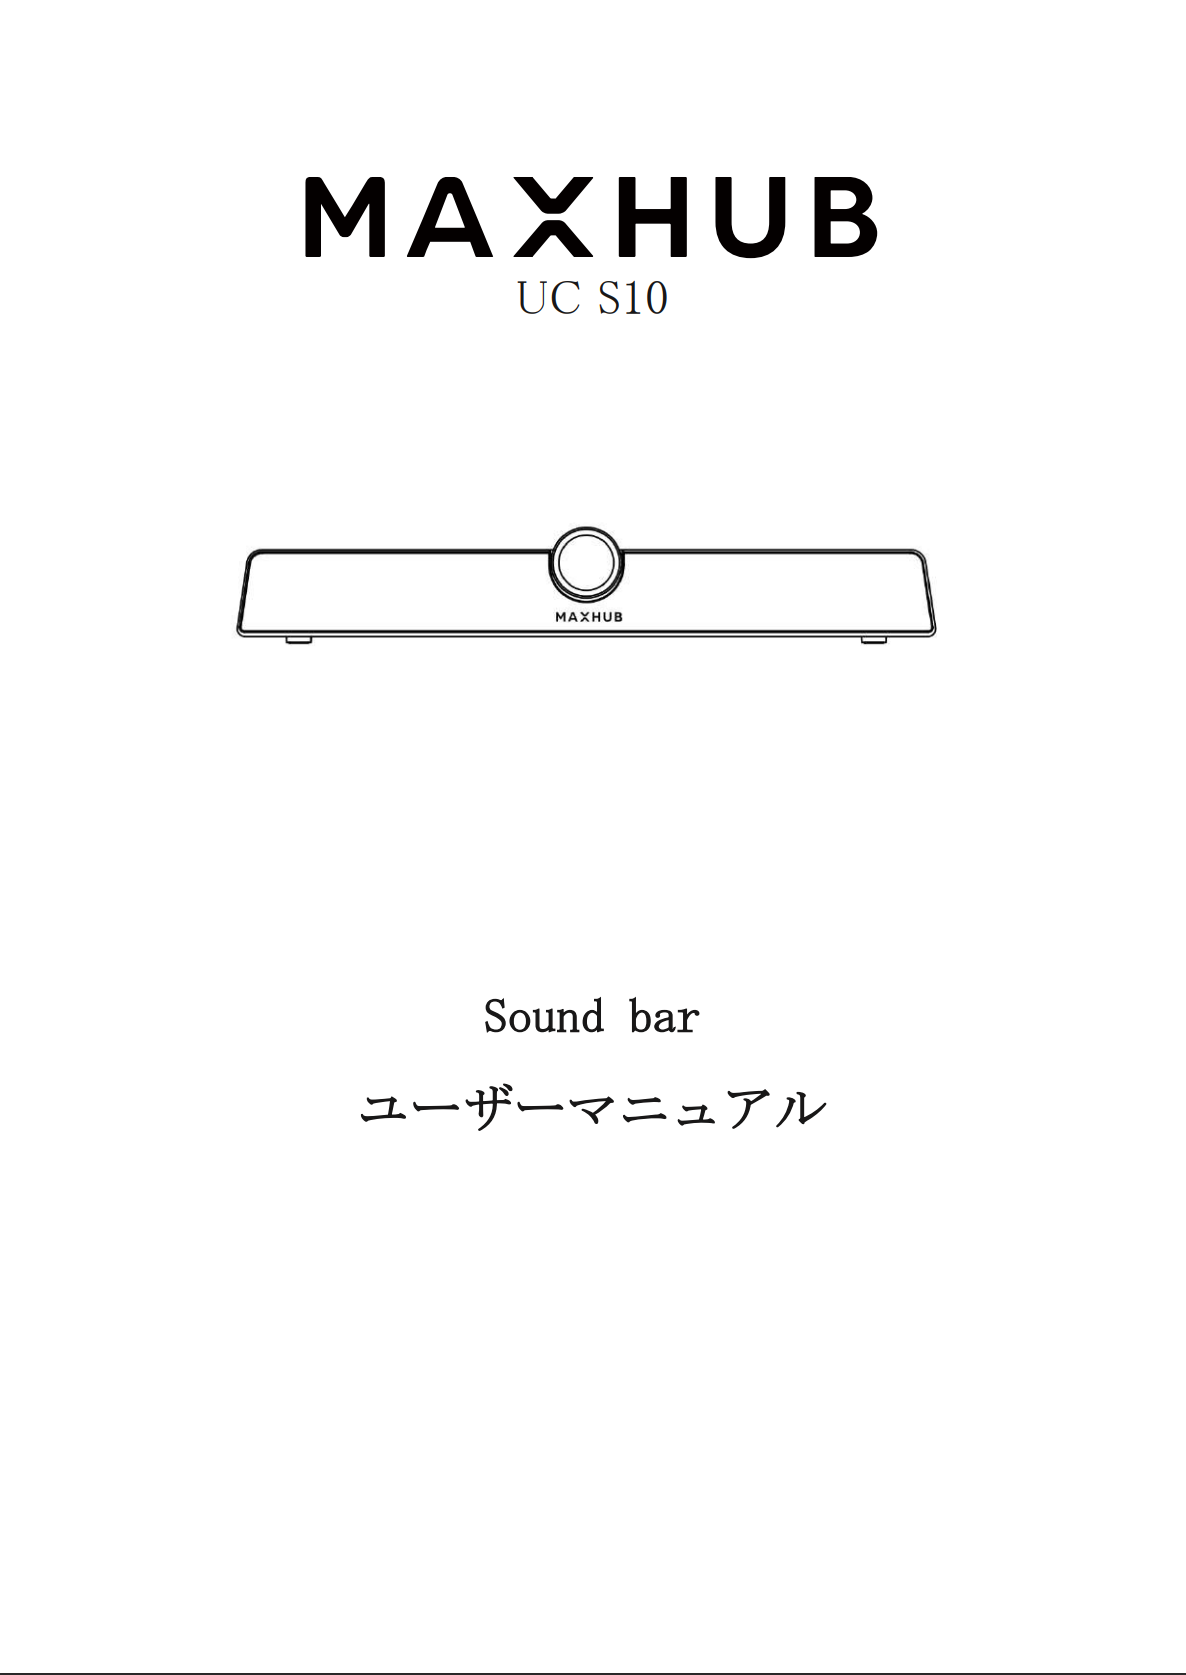 Sound bar